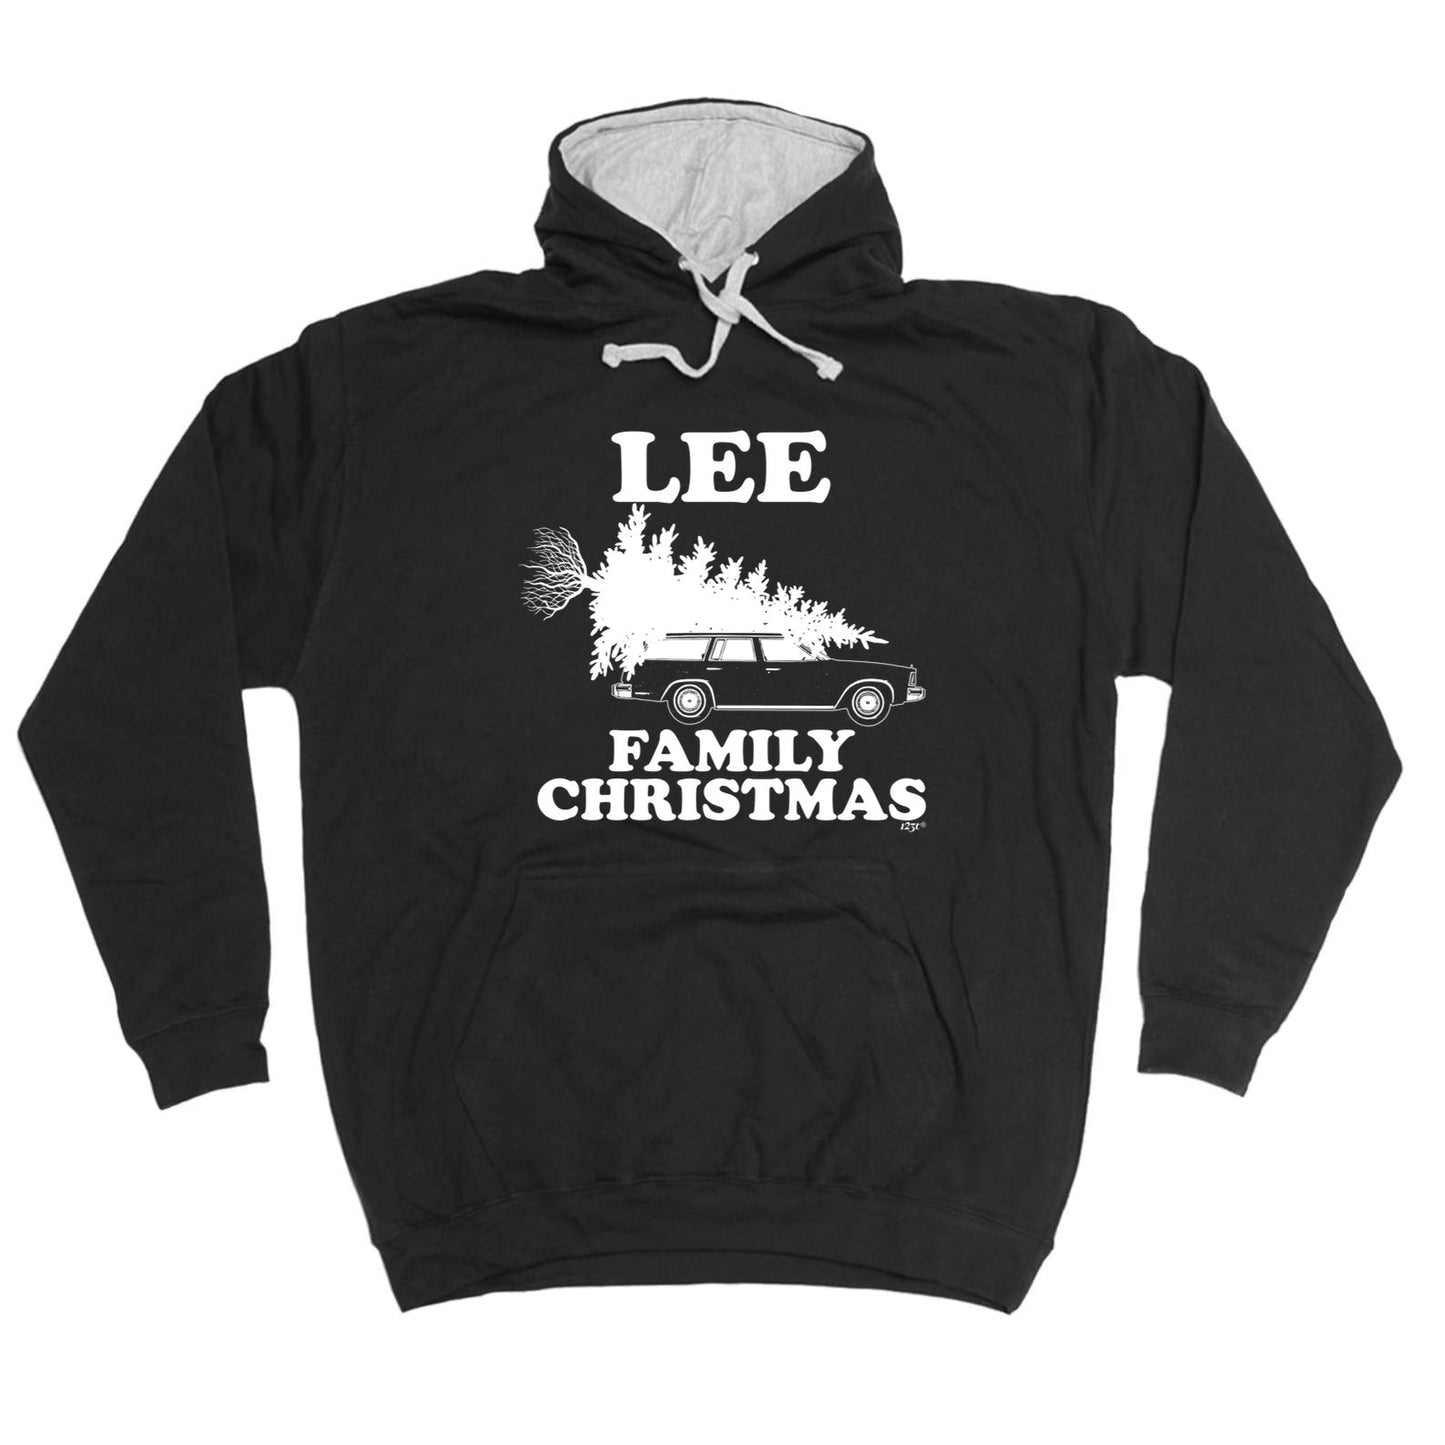 Family Christmas Lee - Xmas Novelty Hoodies Hoodie